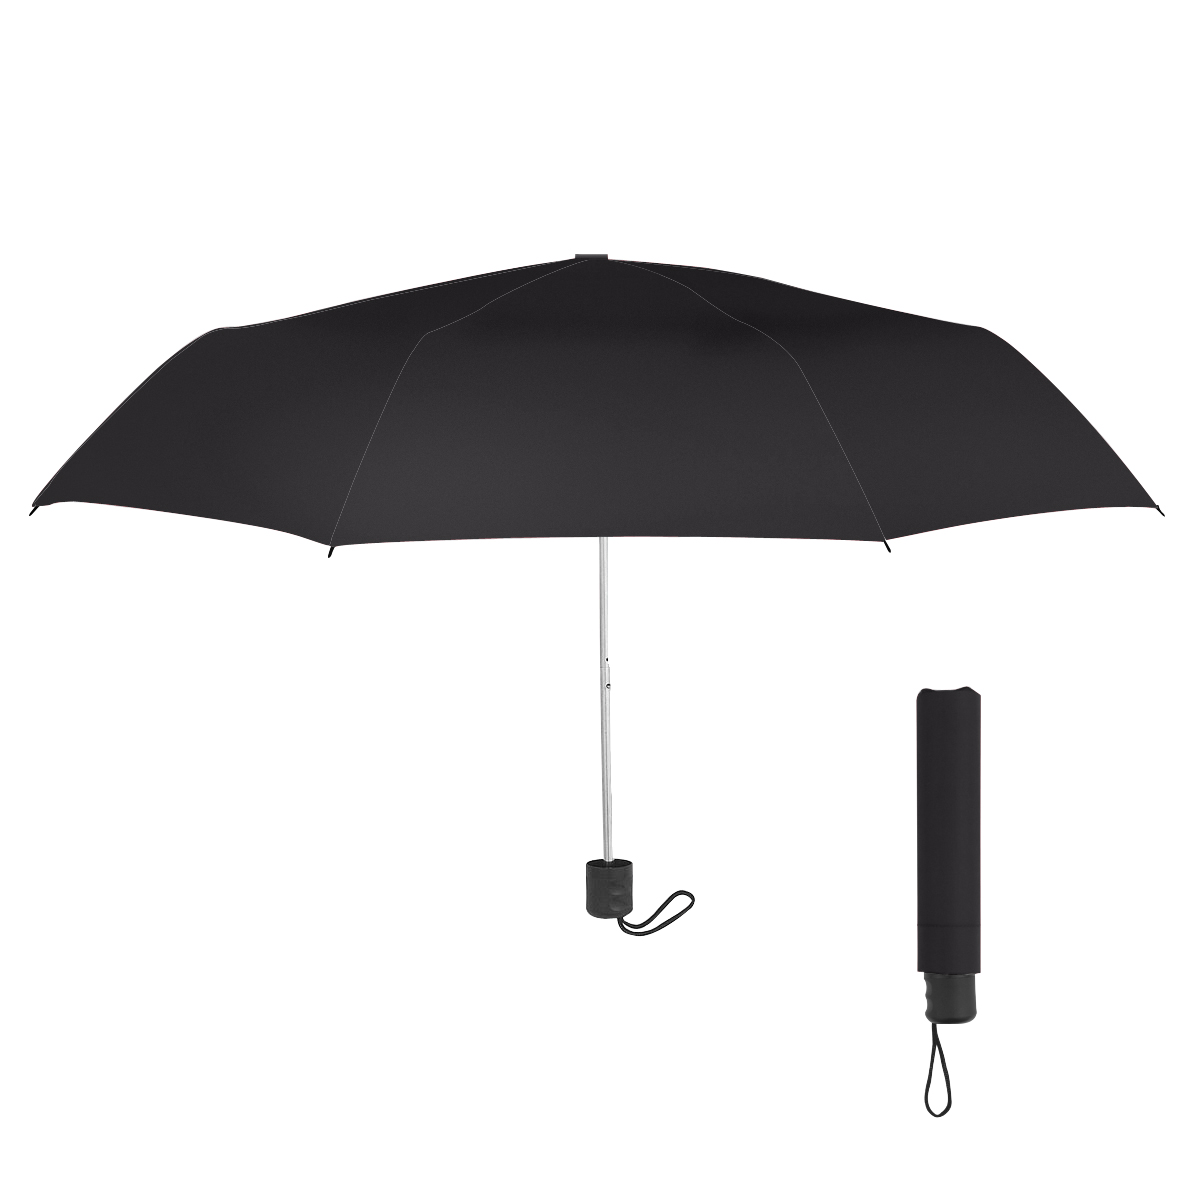 Black Arc Telescopic Umbrella